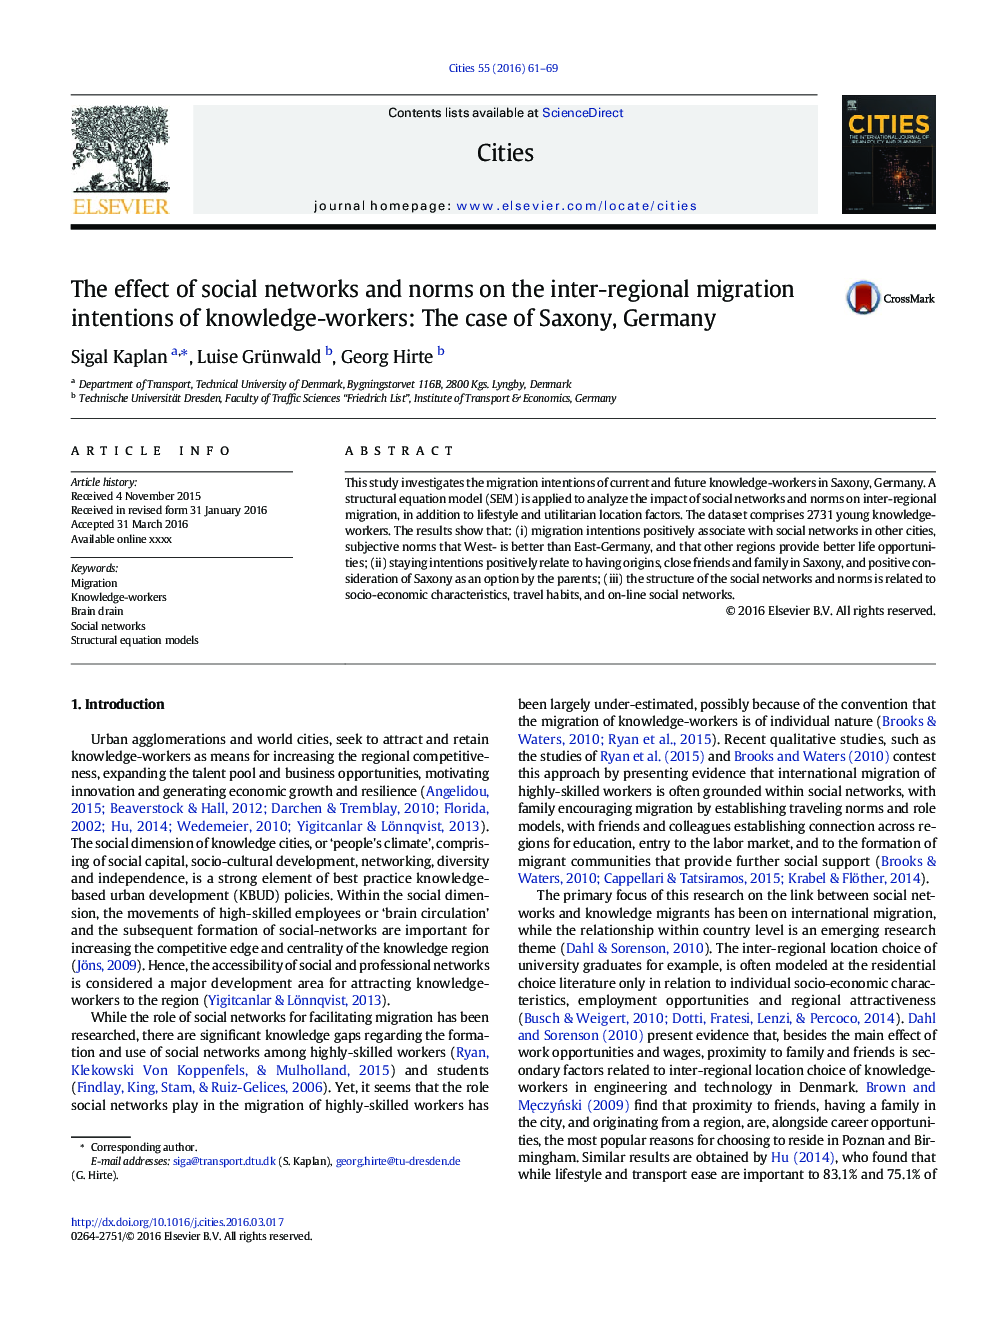 تأثیر شبکه های اجتماعی و هنجارها در مورد اهداف مهاجرت بین منطقه ای دانش پژوهان: مورد زکشن، آلمان 